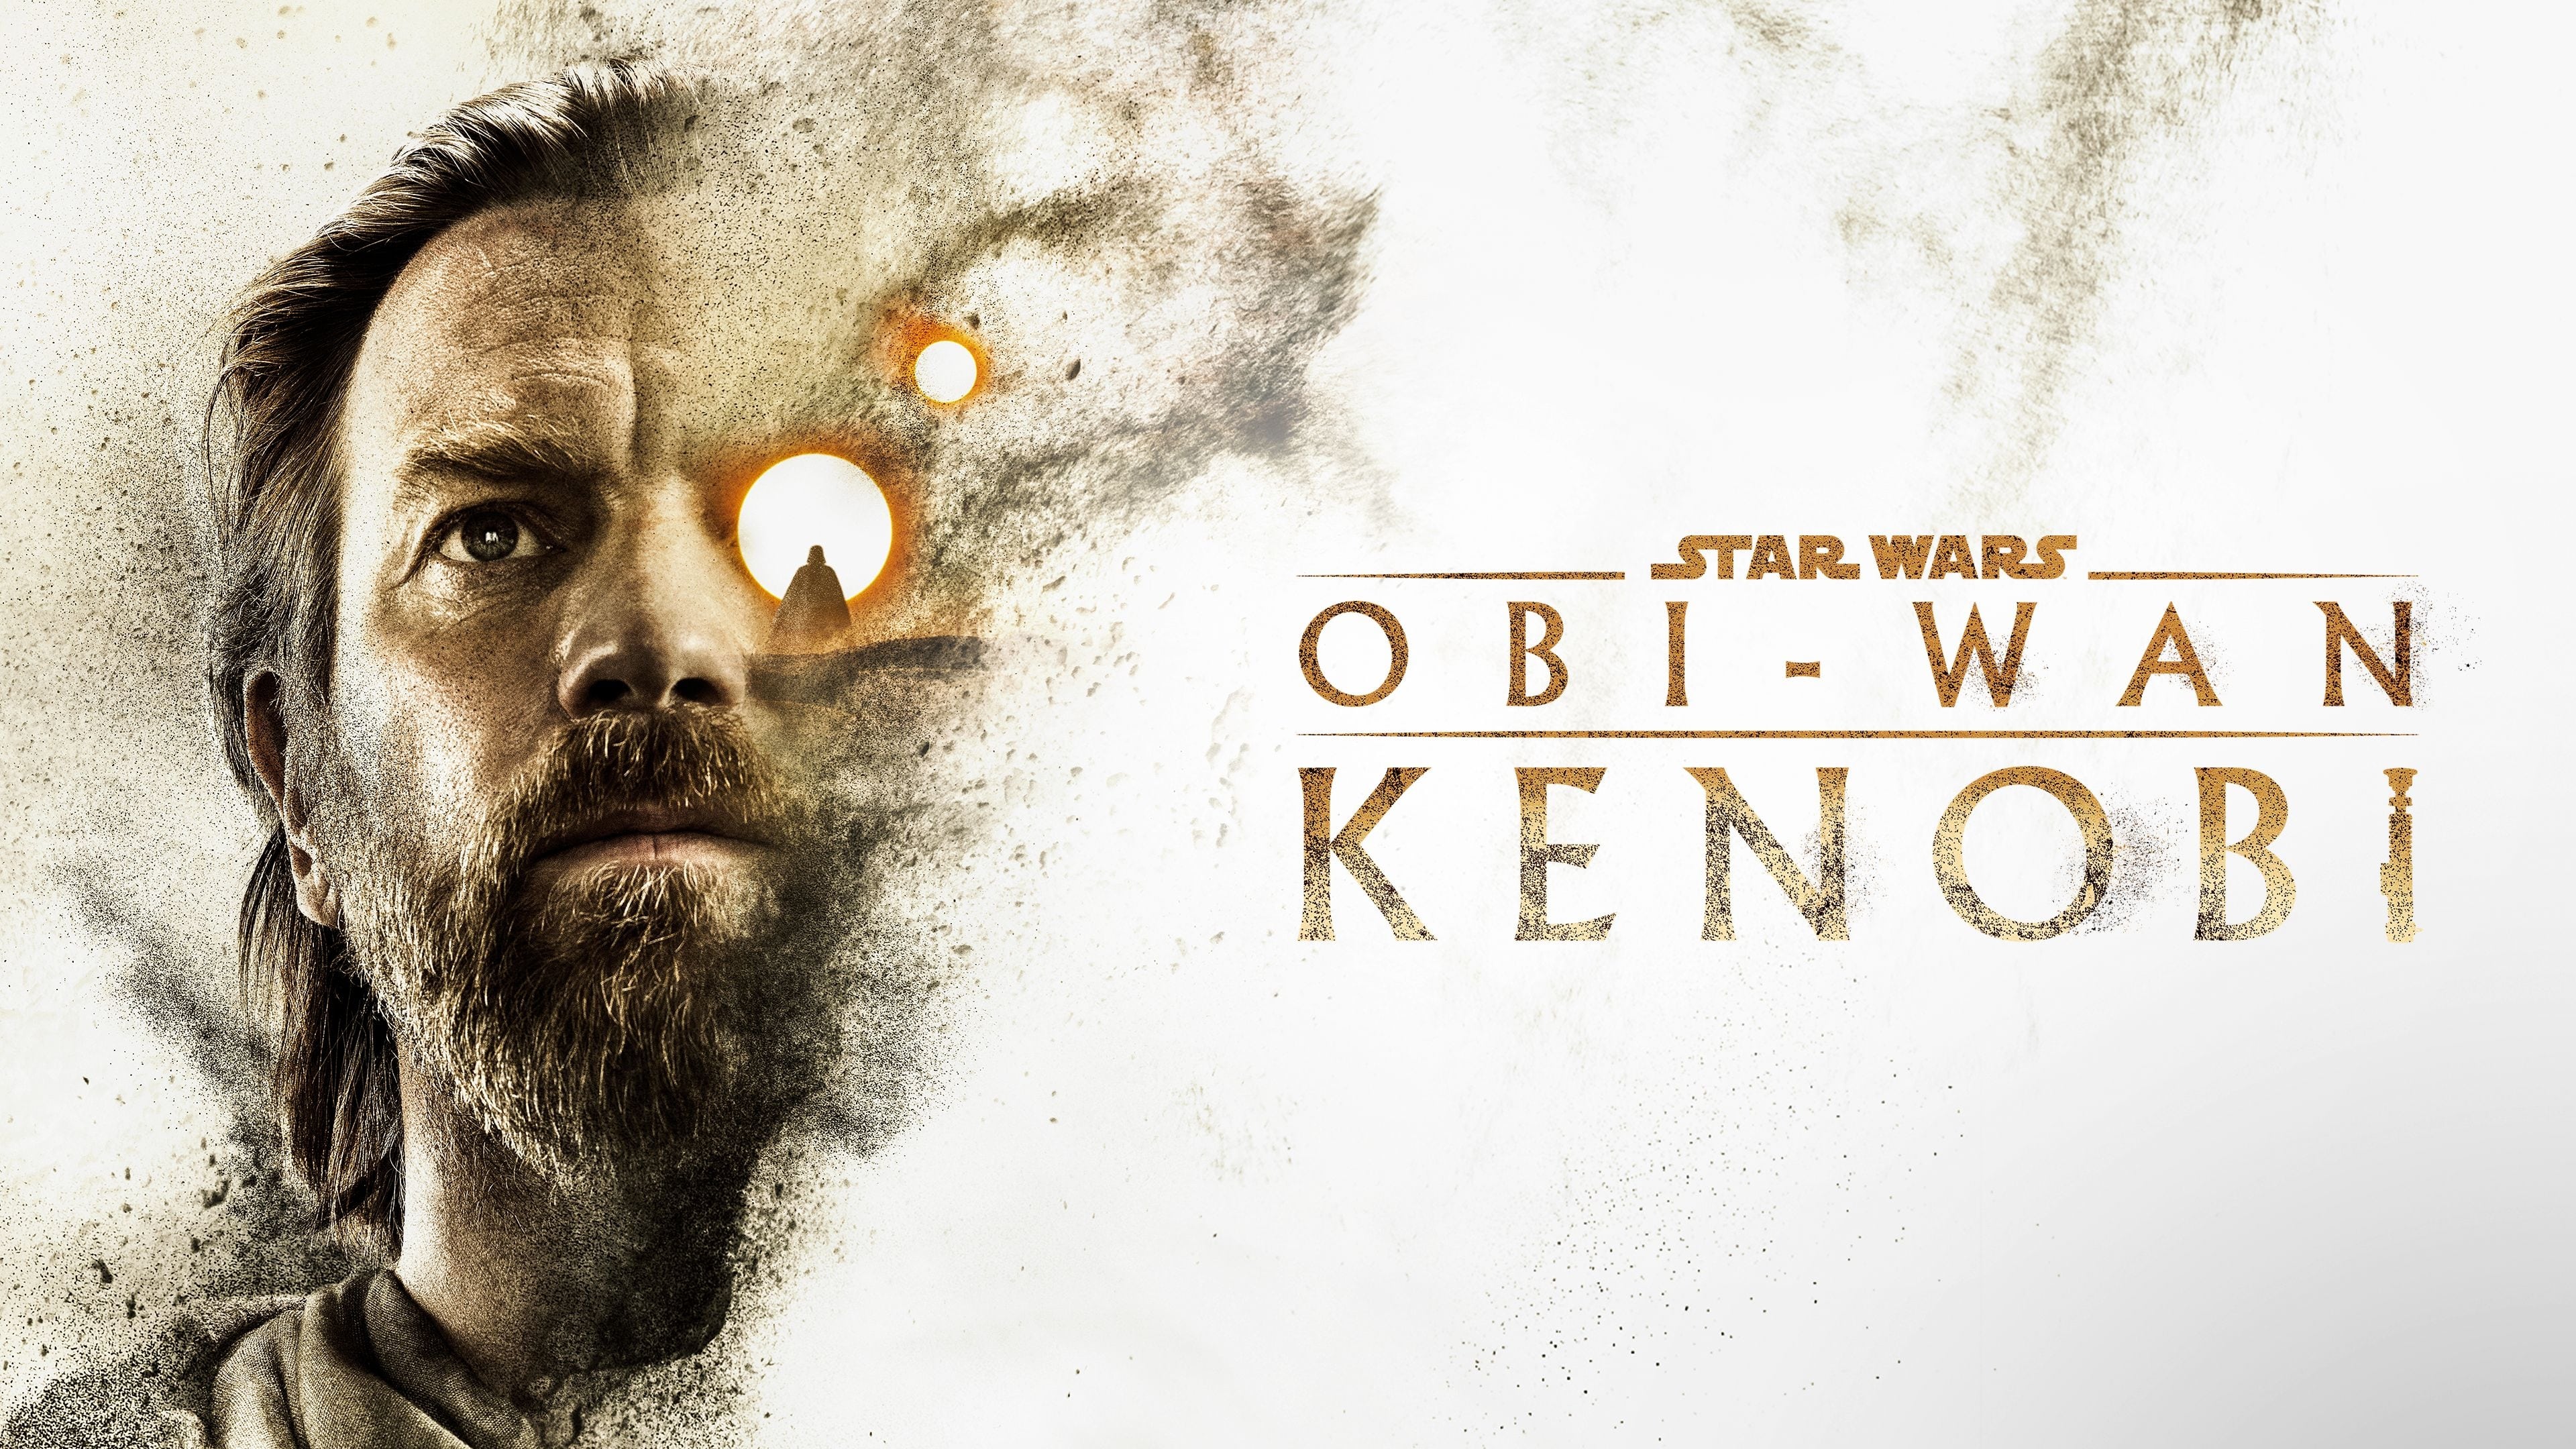 Obi-Wan Kenobi - Season 1 Episode 2